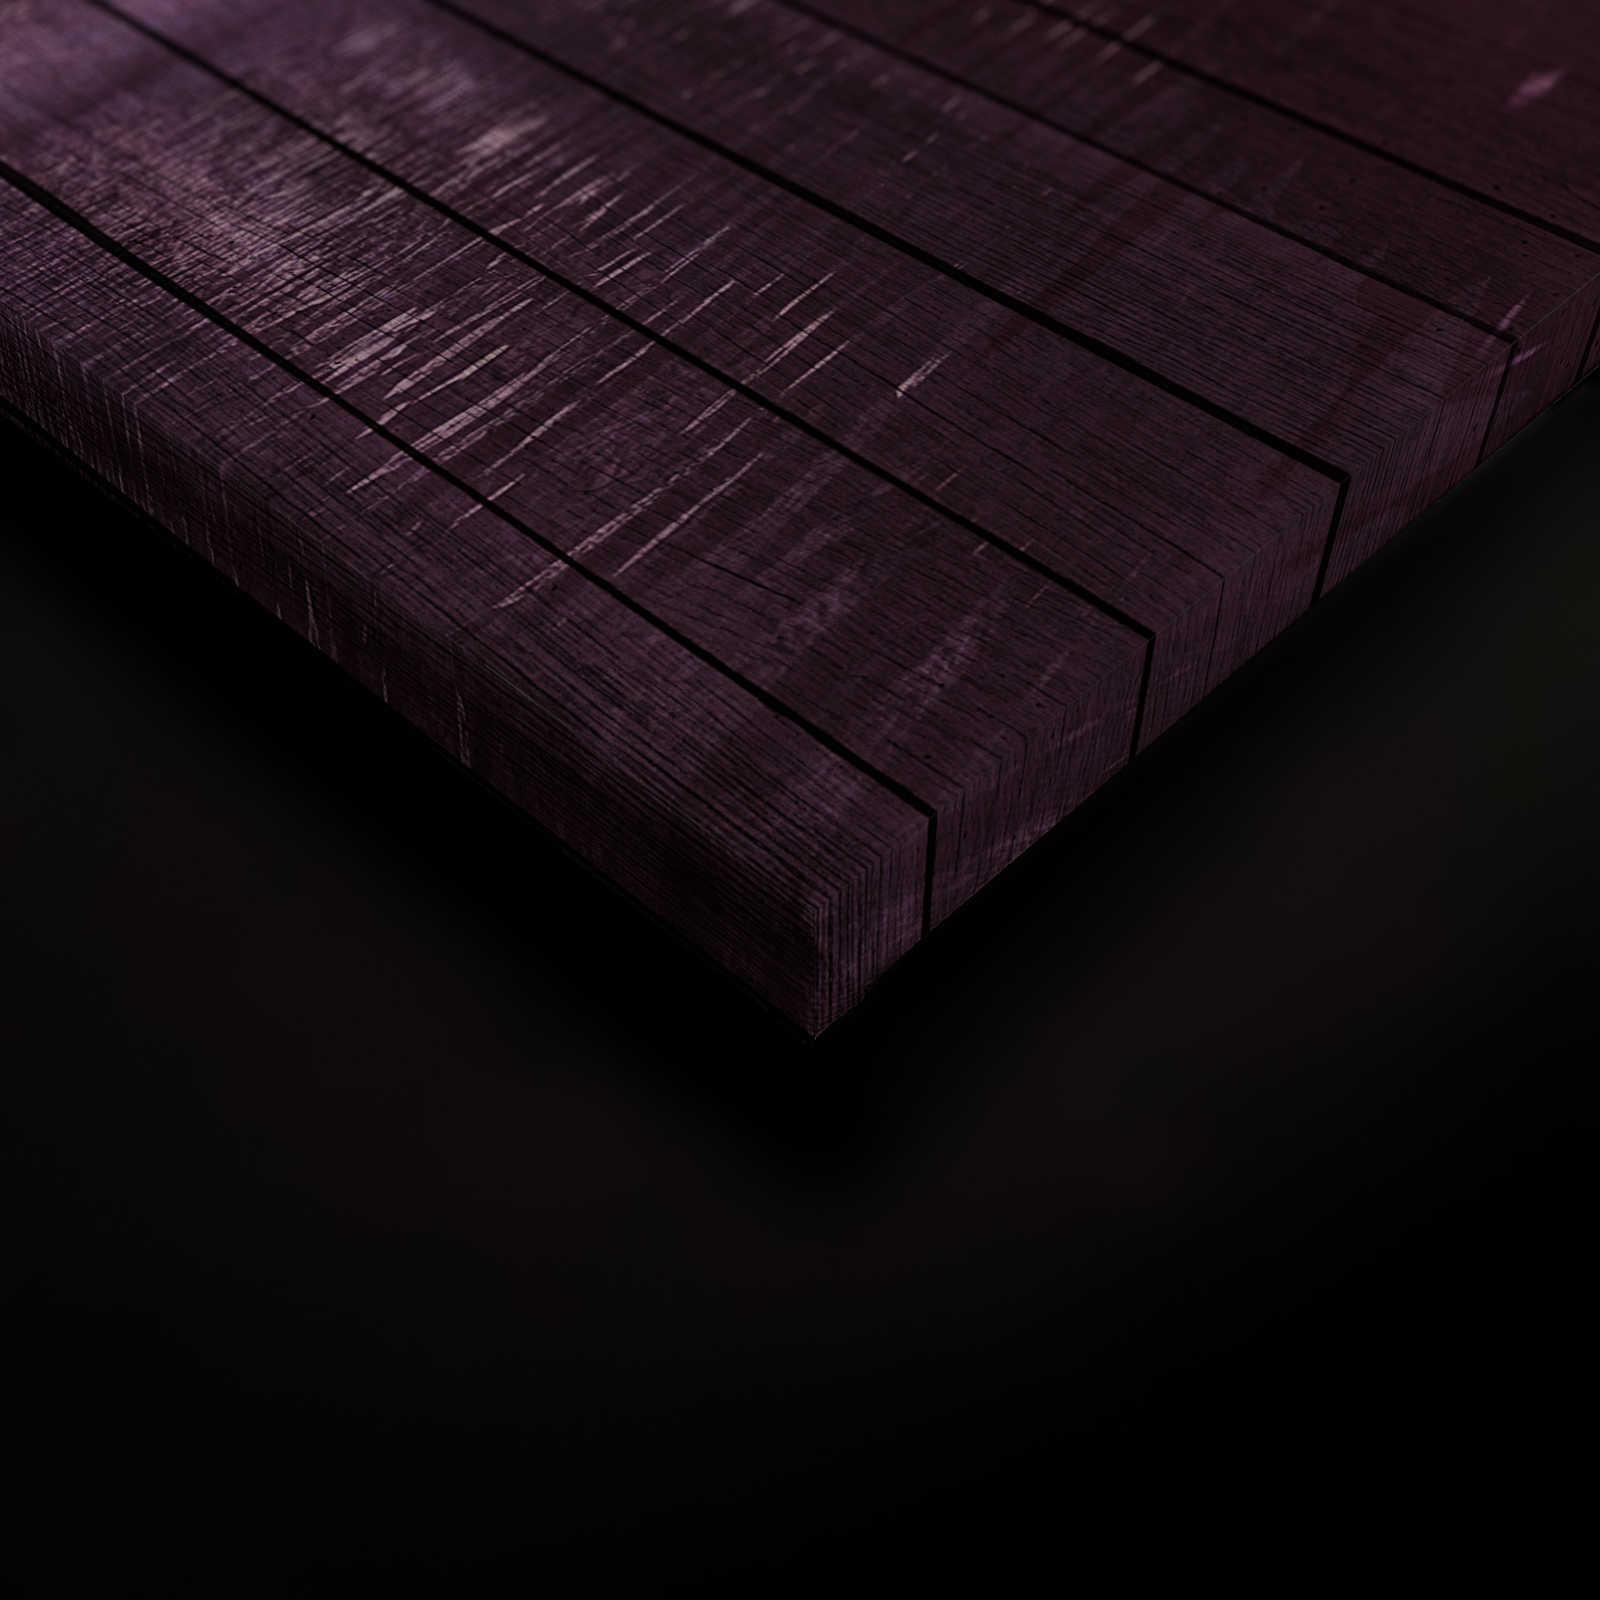             Fantasia 2 - Quadro su tela foresta magica con struttura in pannelli di legno - 0,90 m x 0,60 m
        